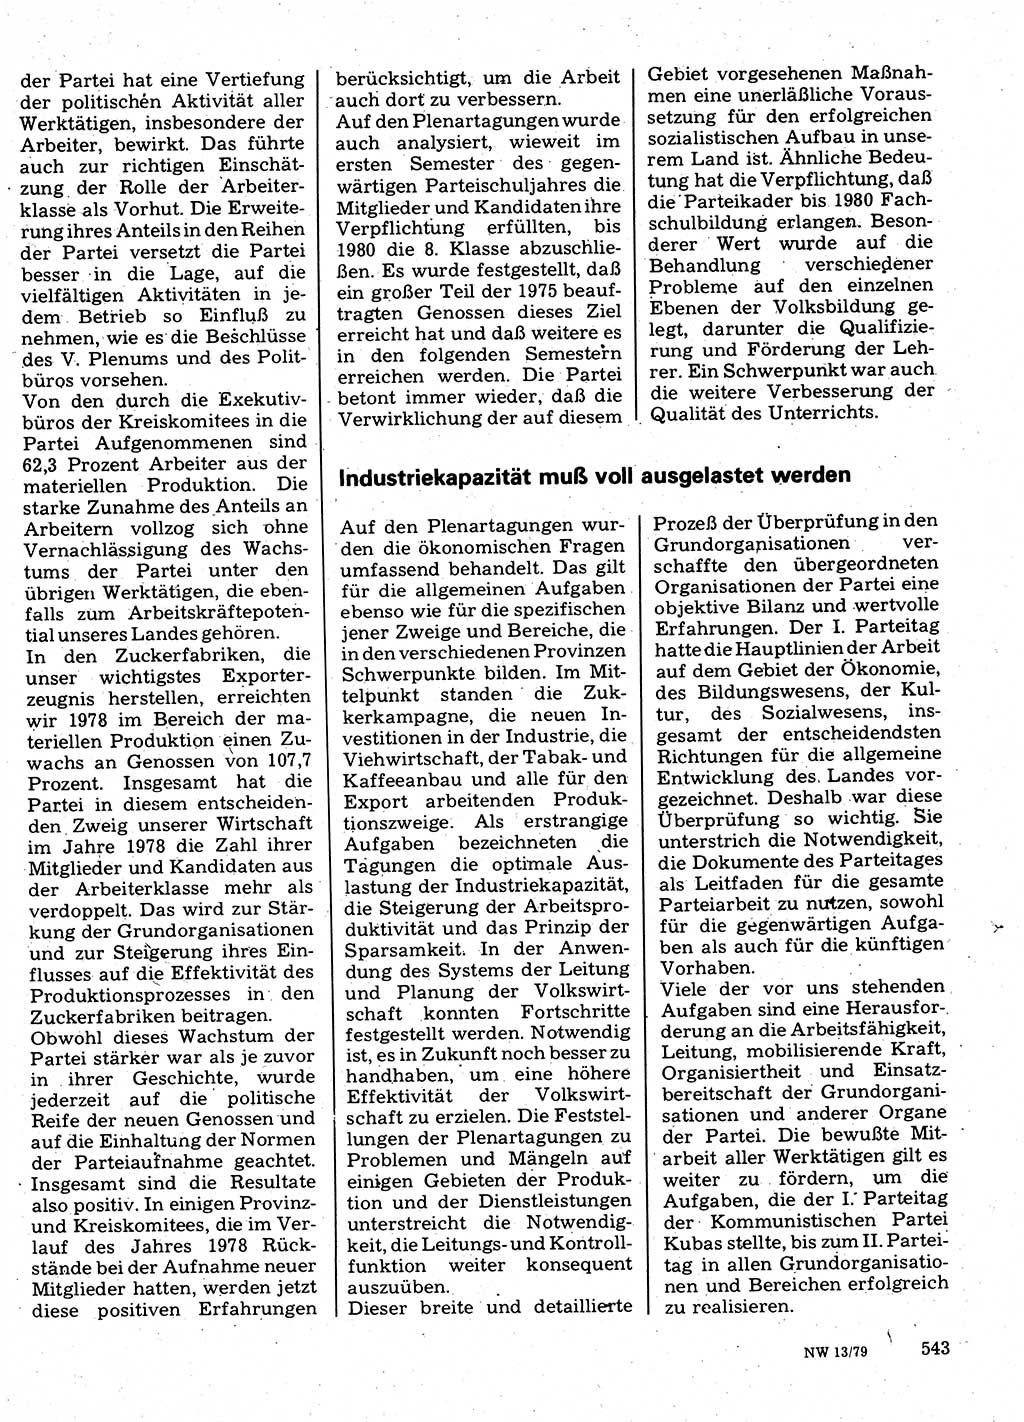 Neuer Weg (NW), Organ des Zentralkomitees (ZK) der SED (Sozialistische Einheitspartei Deutschlands) für Fragen des Parteilebens, 34. Jahrgang [Deutsche Demokratische Republik (DDR)] 1979, Seite 543 (NW ZK SED DDR 1979, S. 543)